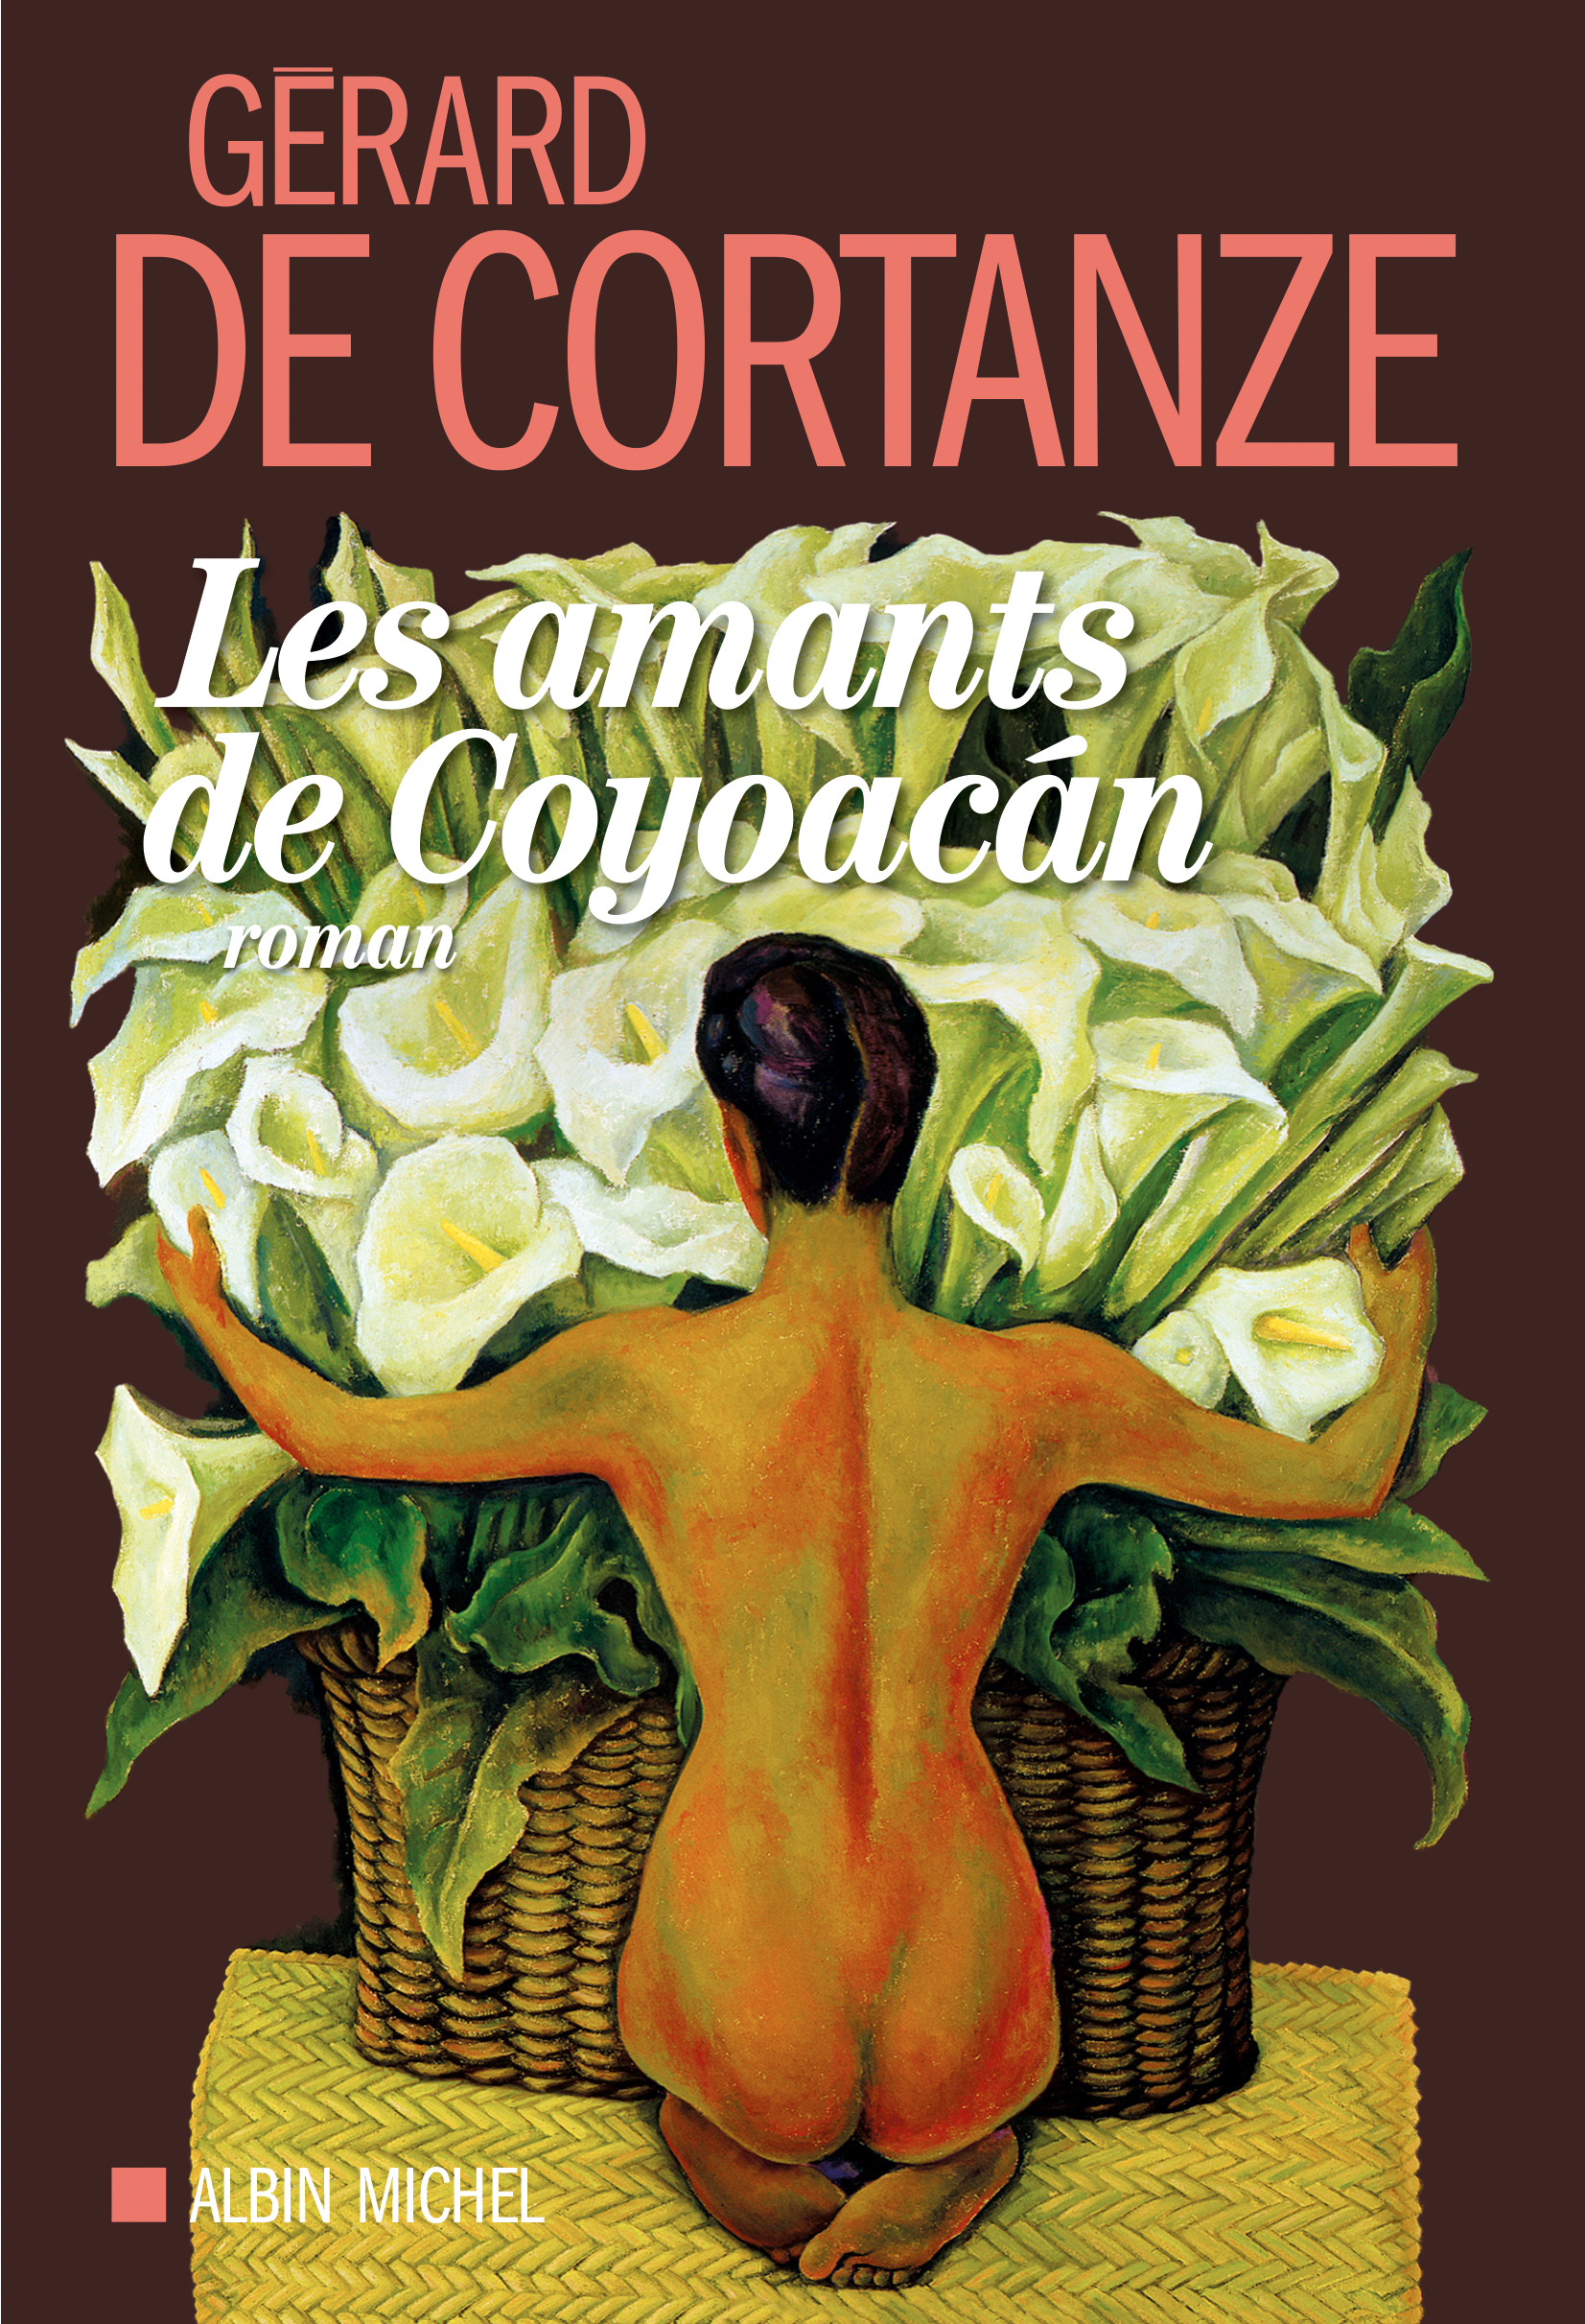 Couverture du livre Les Amants de Coyoacan